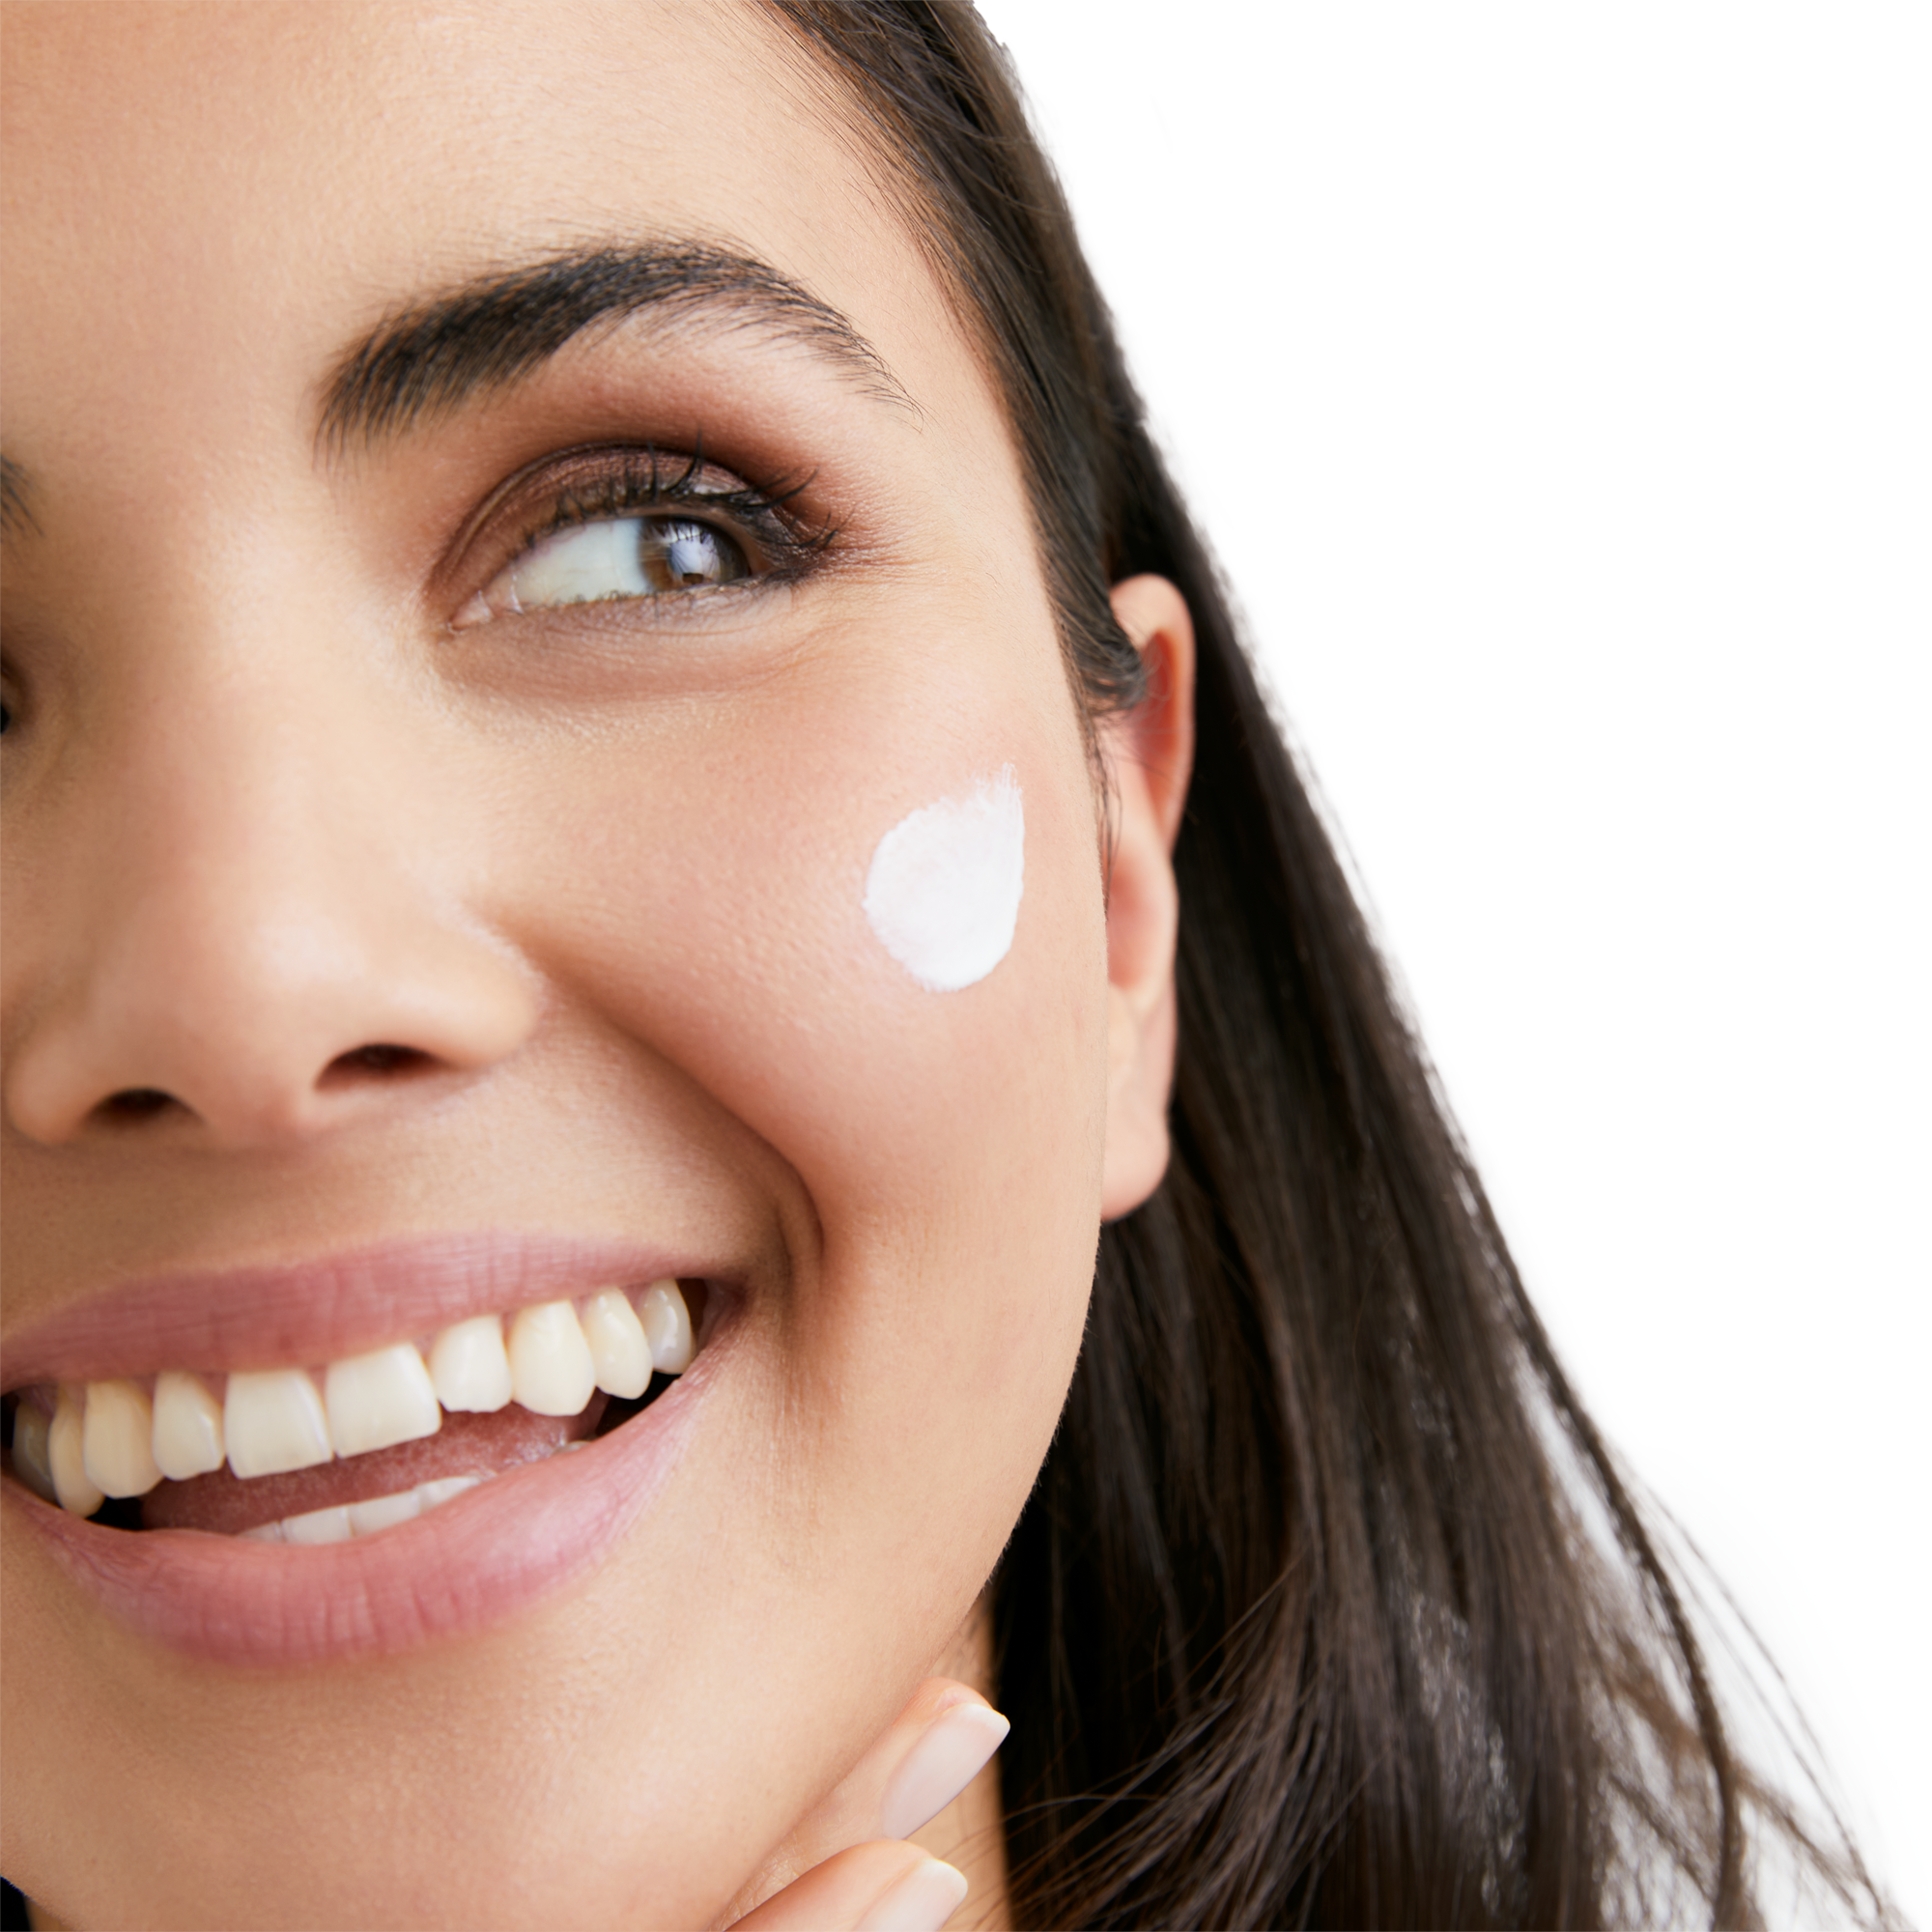 Sensitive Protect krema za zaštitu kože lica od sunca SPF 50+